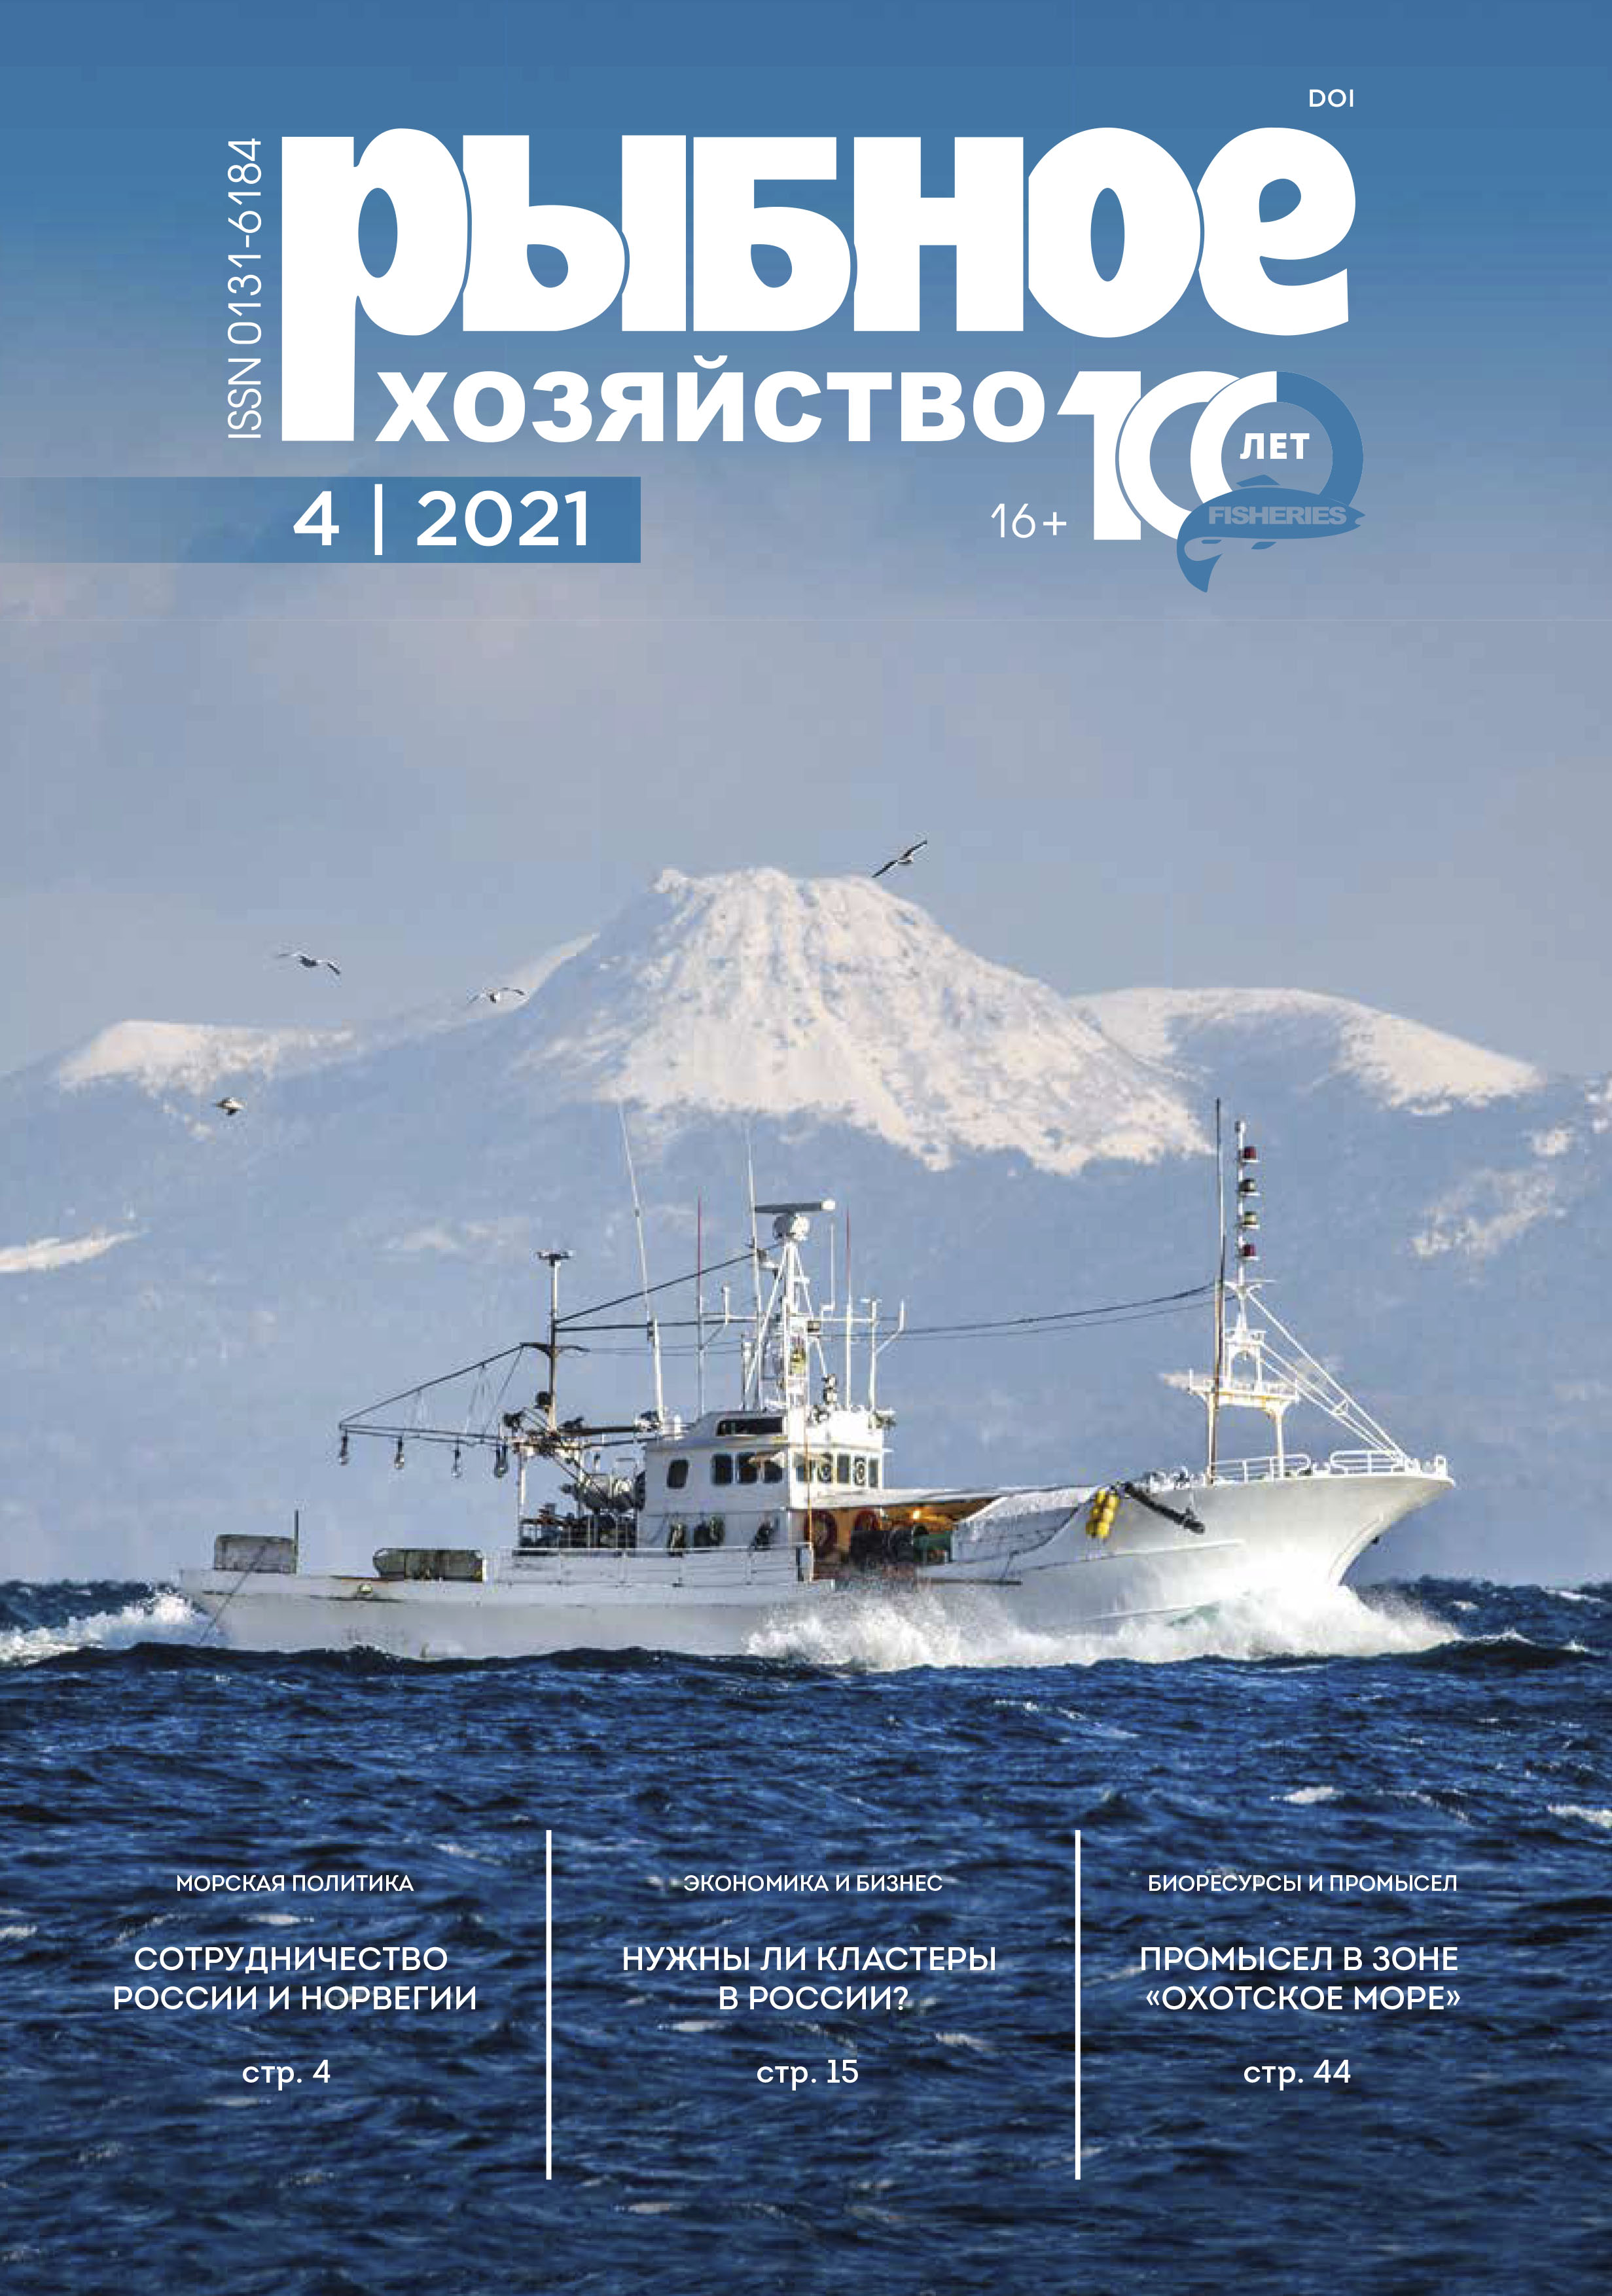             Анализ освоения сырьевой базы рыбодобывающим флотом в зоне «Охотское море» в 2019 году
    